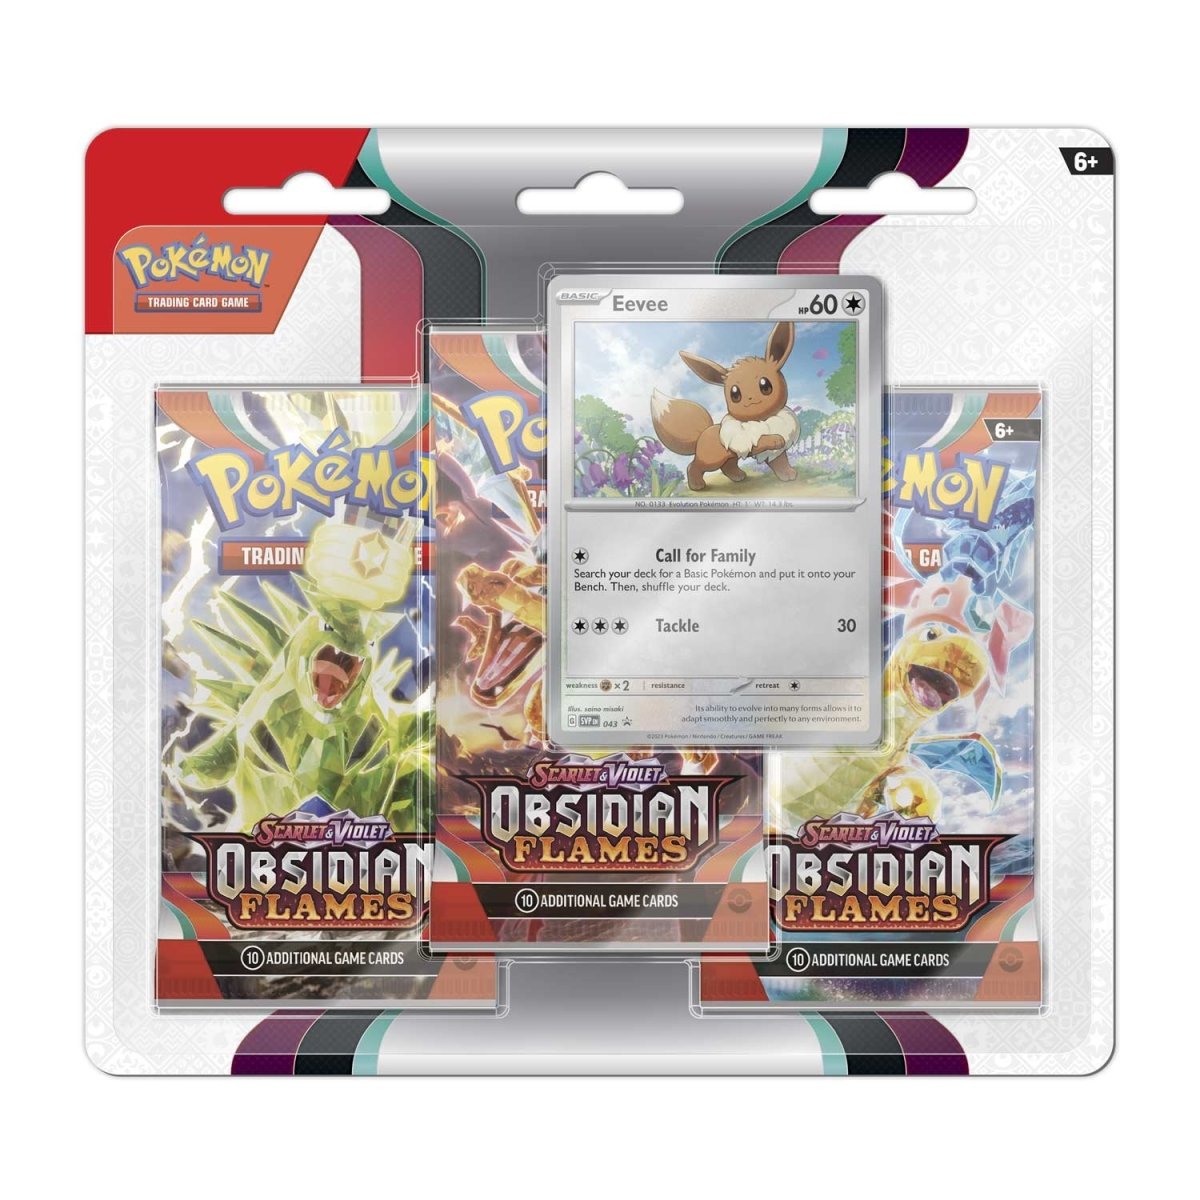 Pokémon TCG: Scarlet & Violet-Obsidian Flames 3 Booster Packs & Promo Card